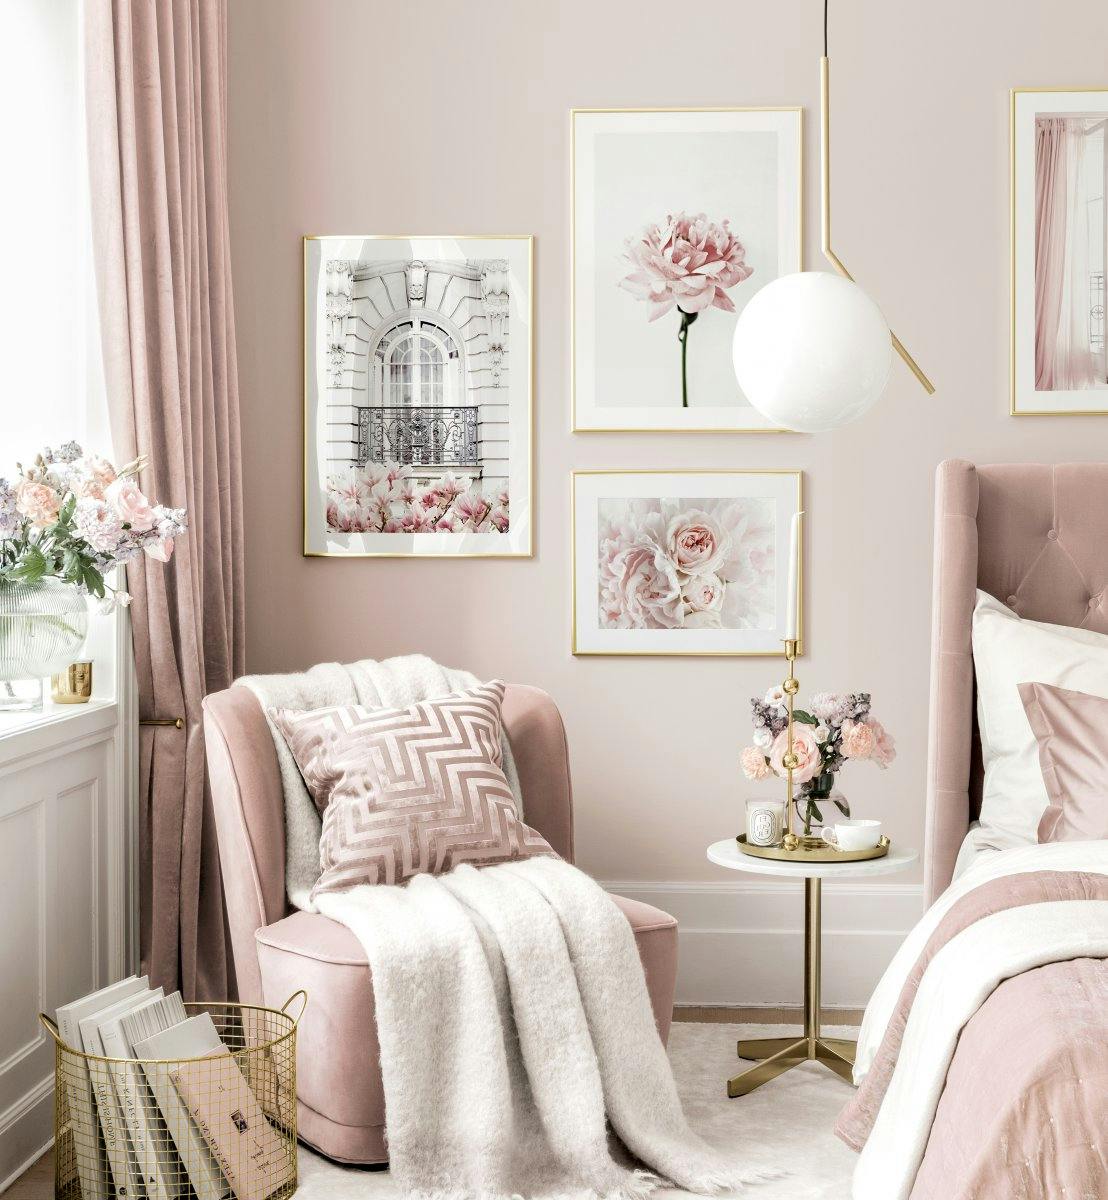 Rózsaszín olvasósarok kép fal virág poszterek arany keretek